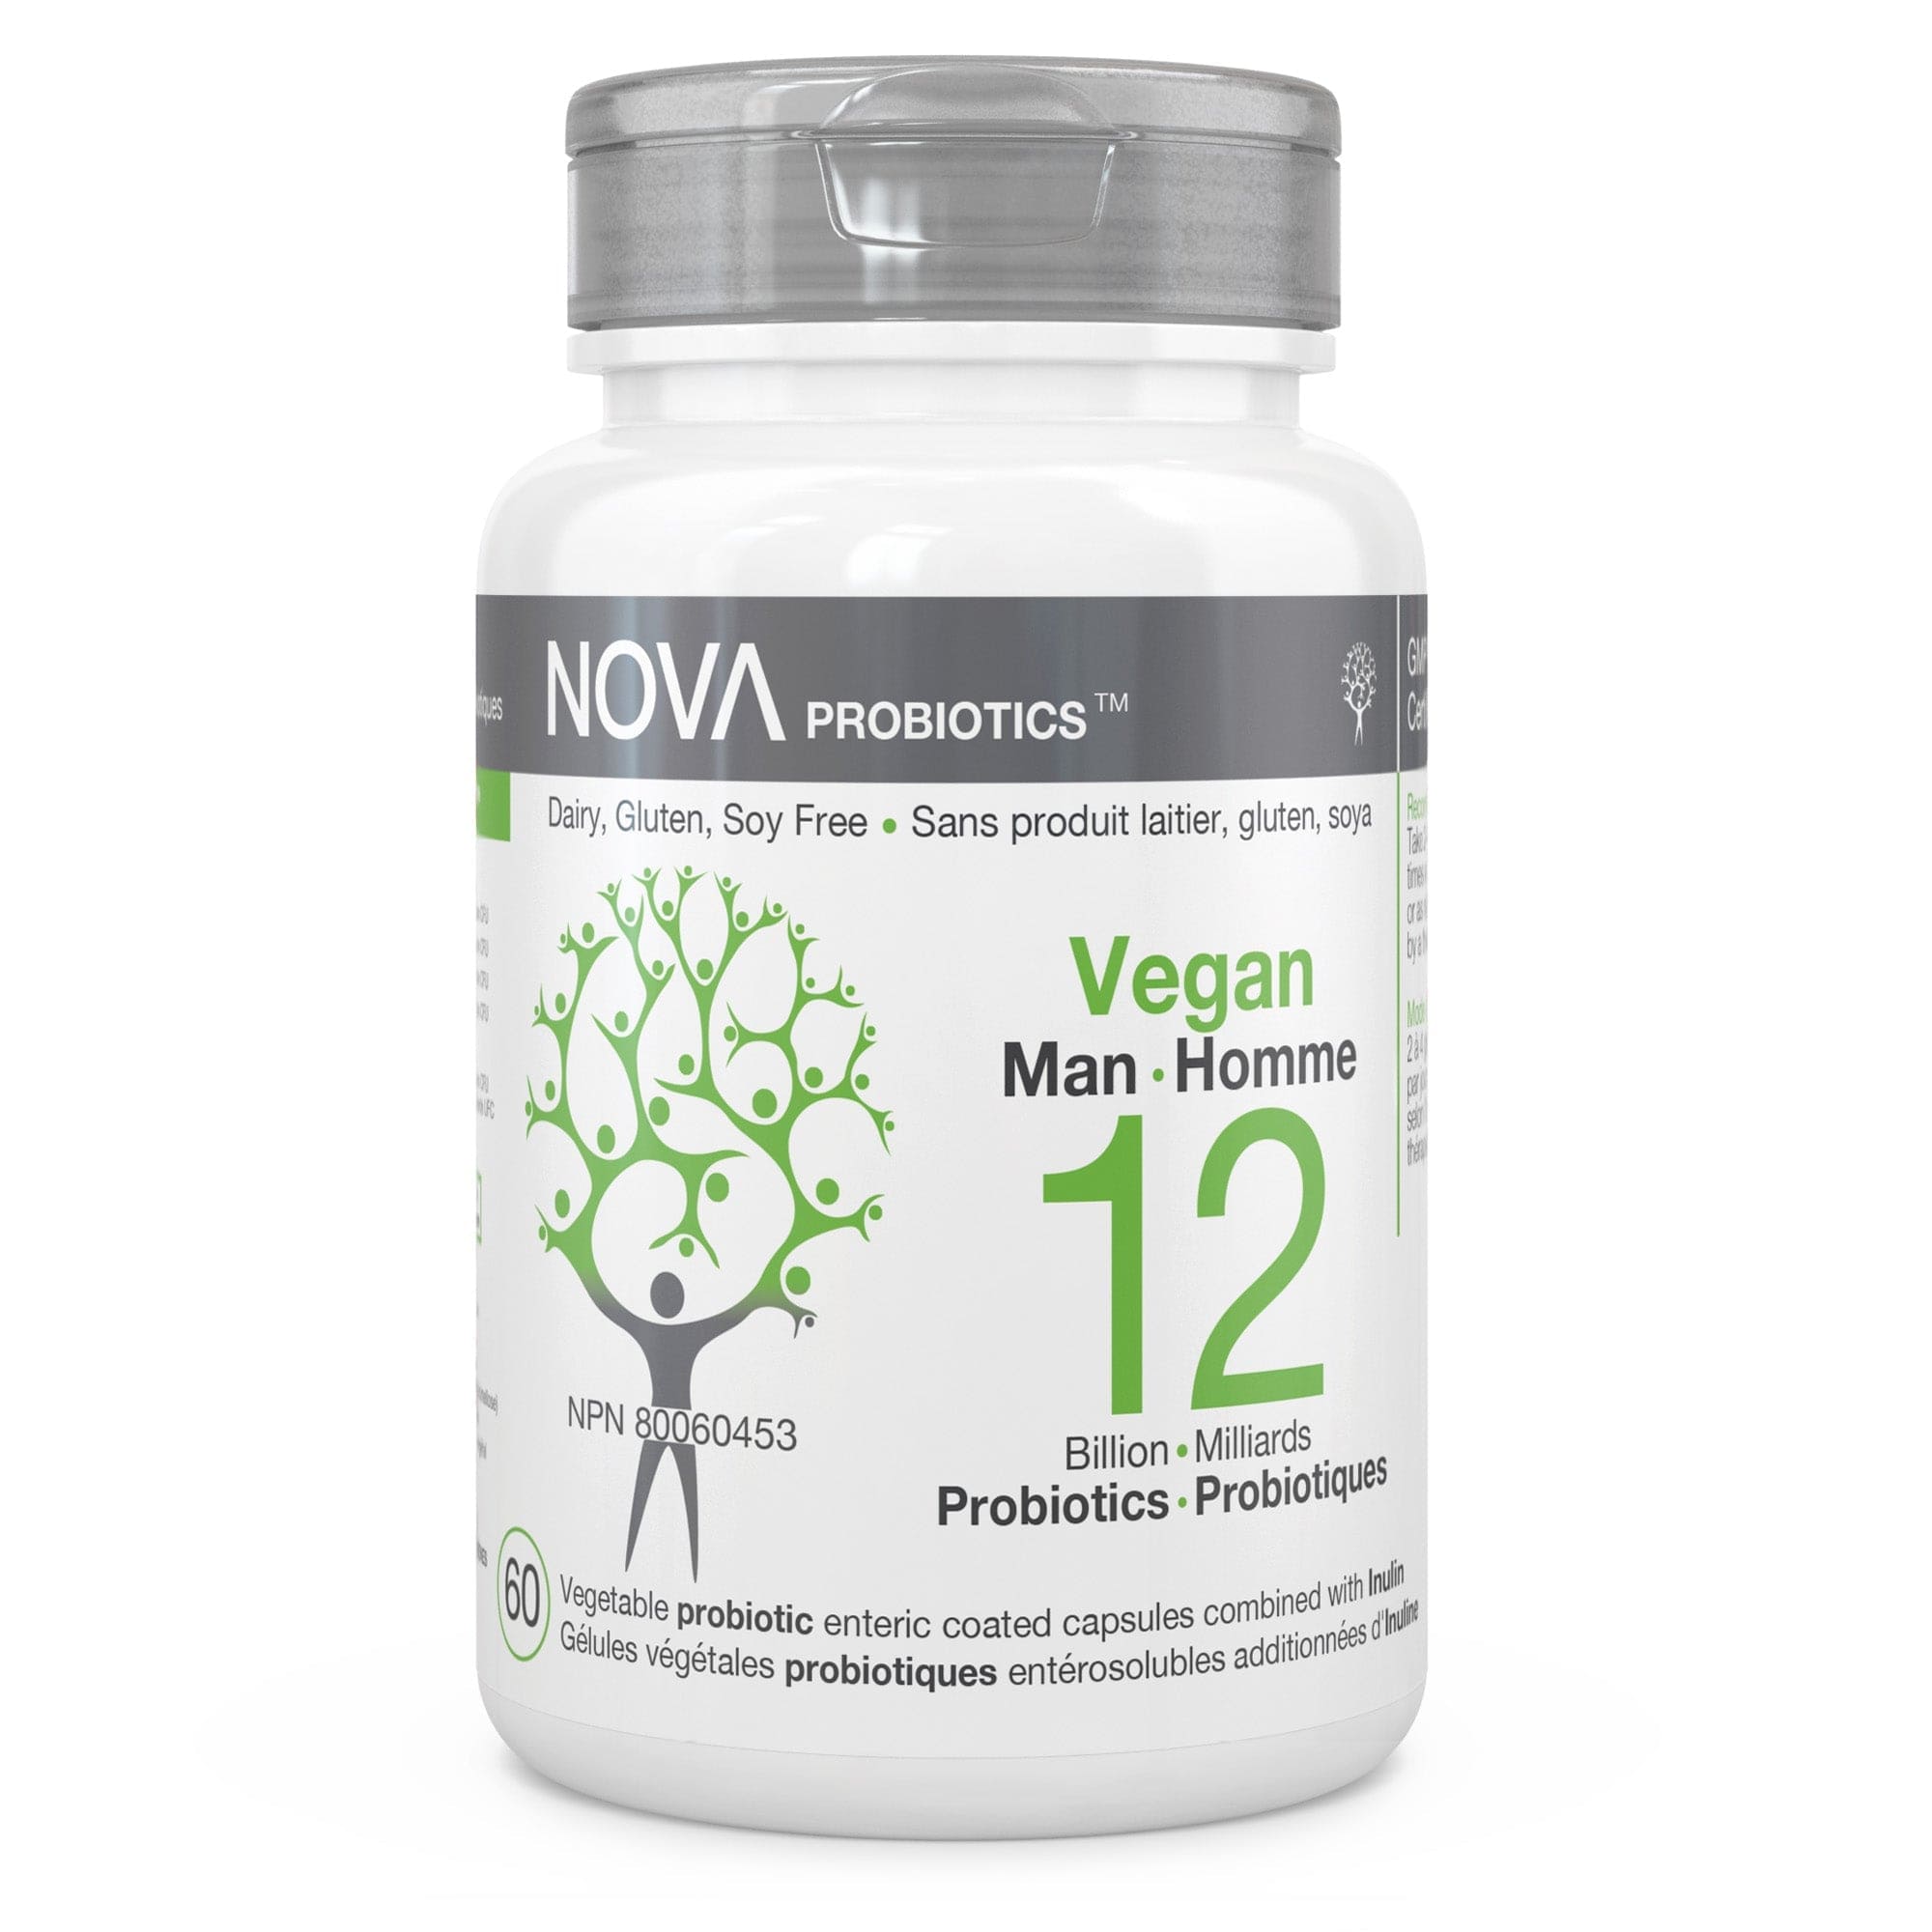 NOVA PROBIOTICS Suppléments Vegan homme (4 souches, 12 milliards) (NPN80029474) 60caps